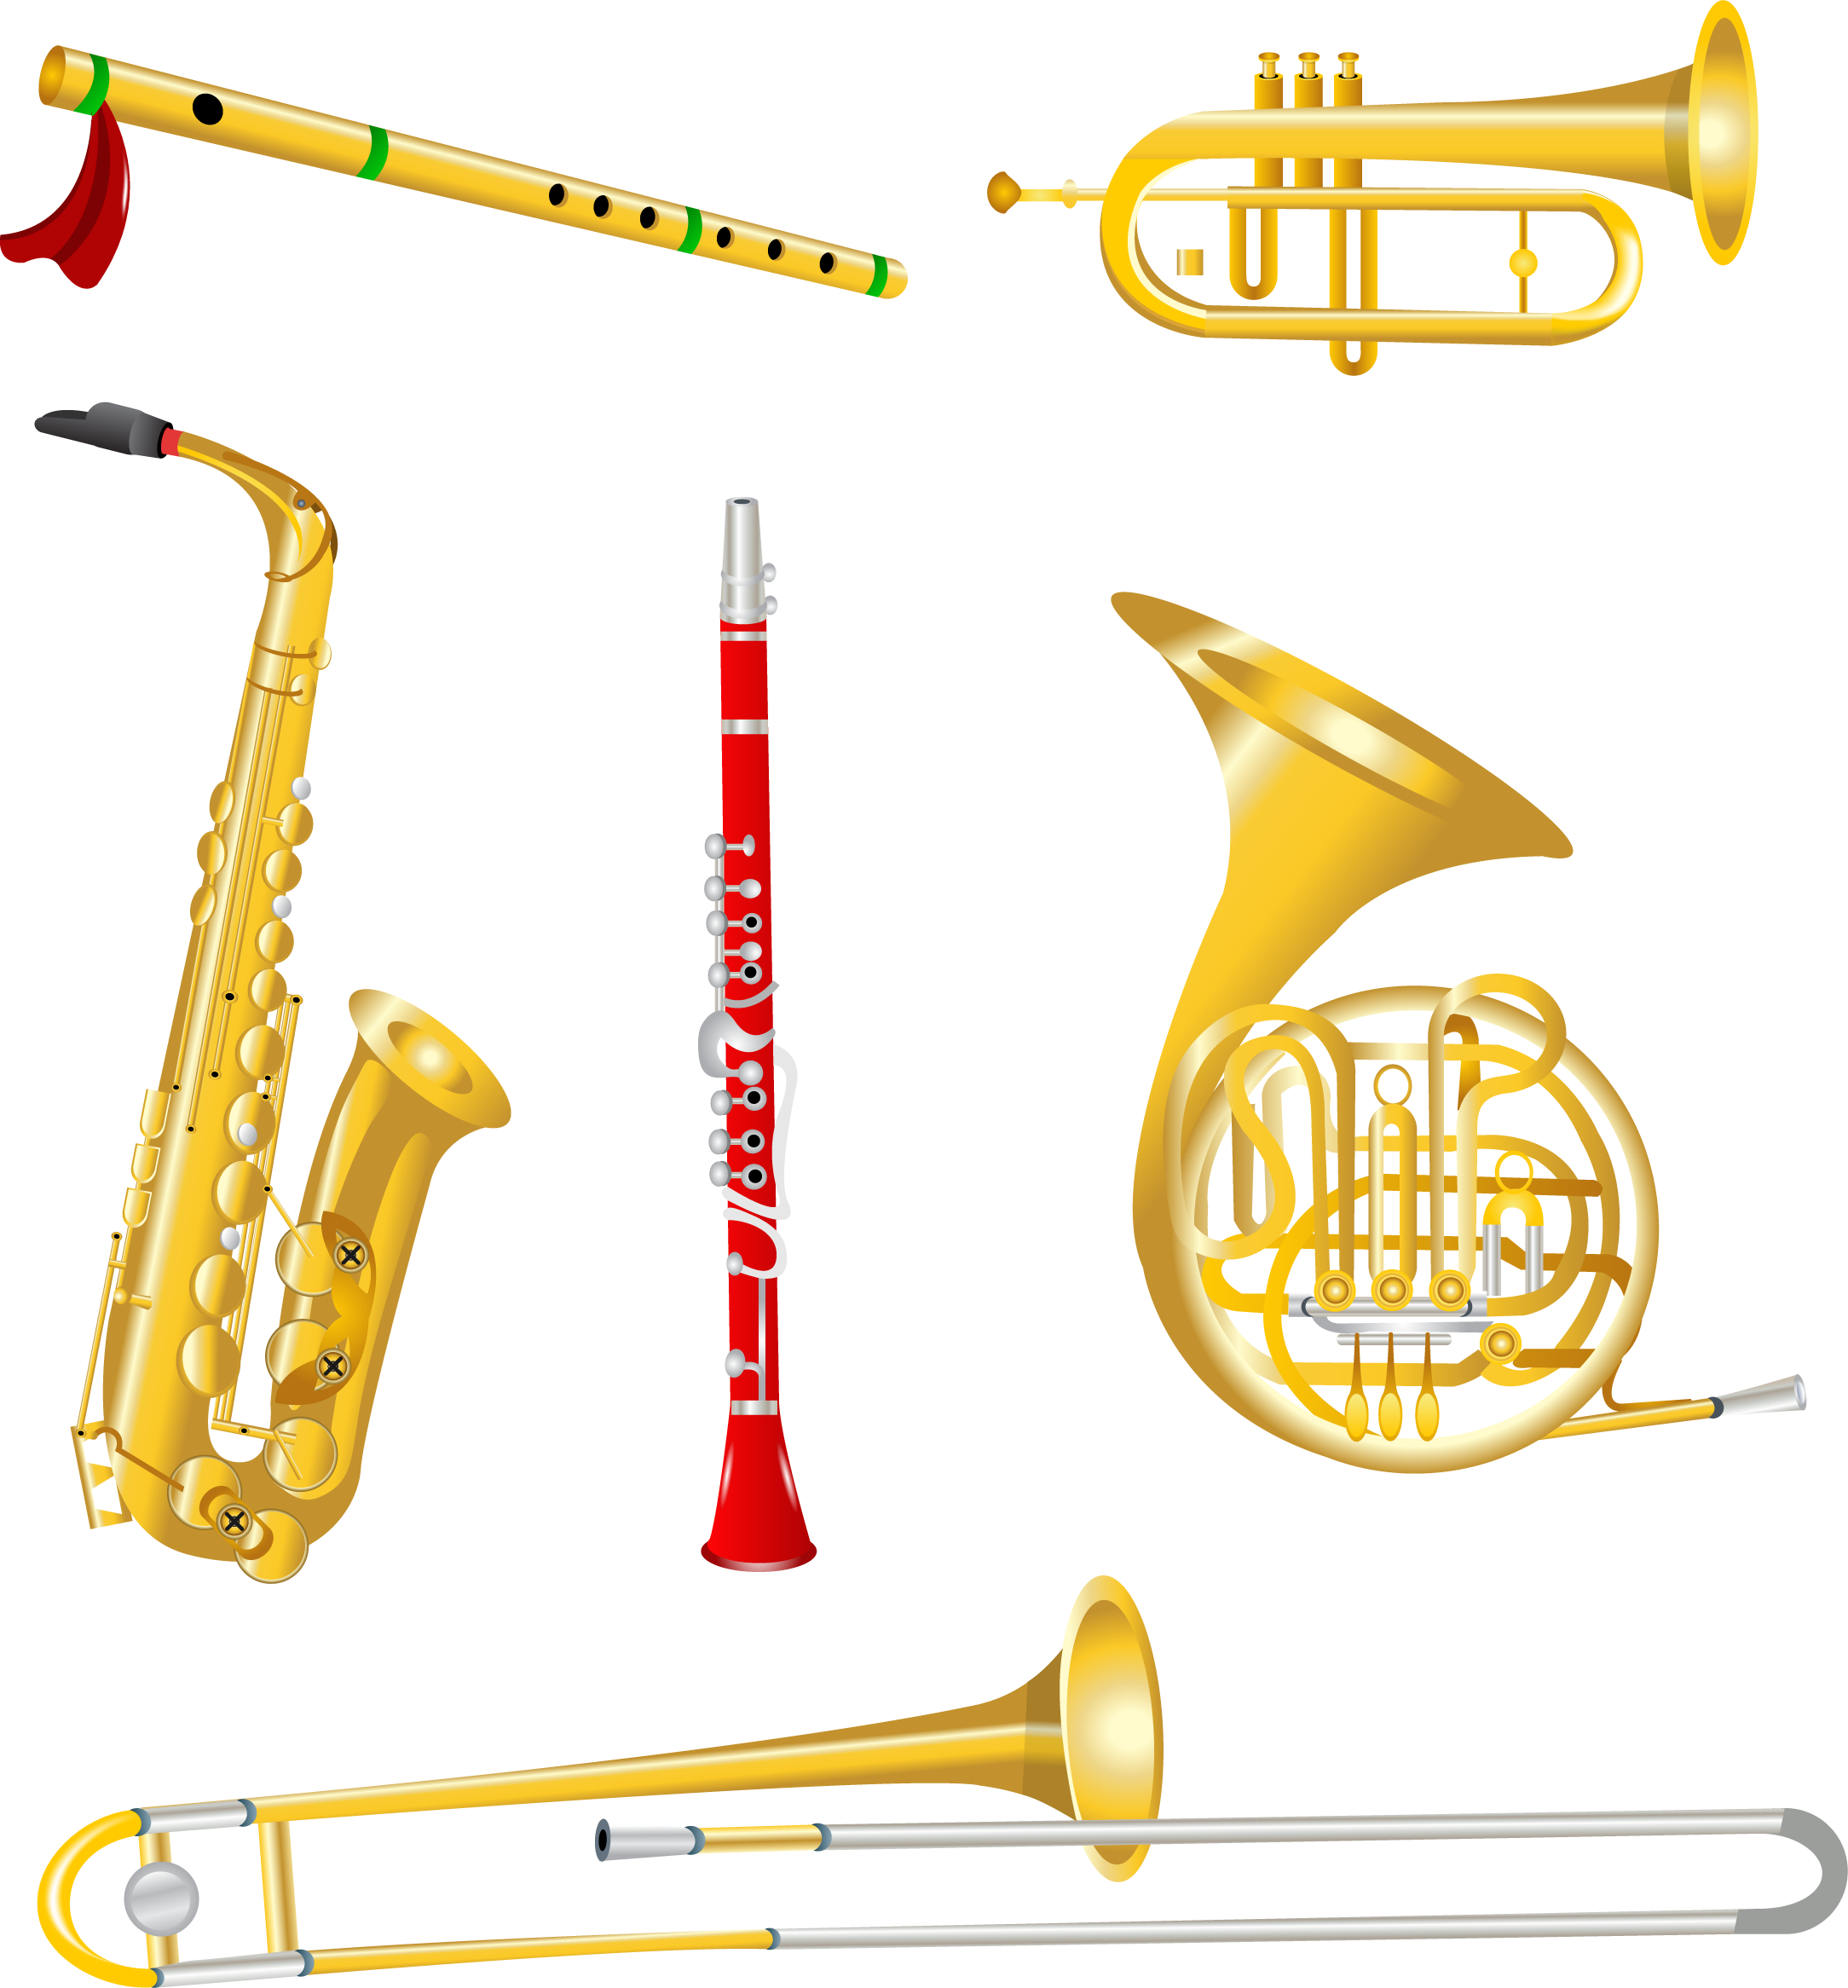 Музыкальные инструменты духовые саксофон труба тромбон. Труба саксофон тромбон. Кларнет, тромбон, саксофон, труба. Медно духовые инструменты саксофон. Музыка трубочка